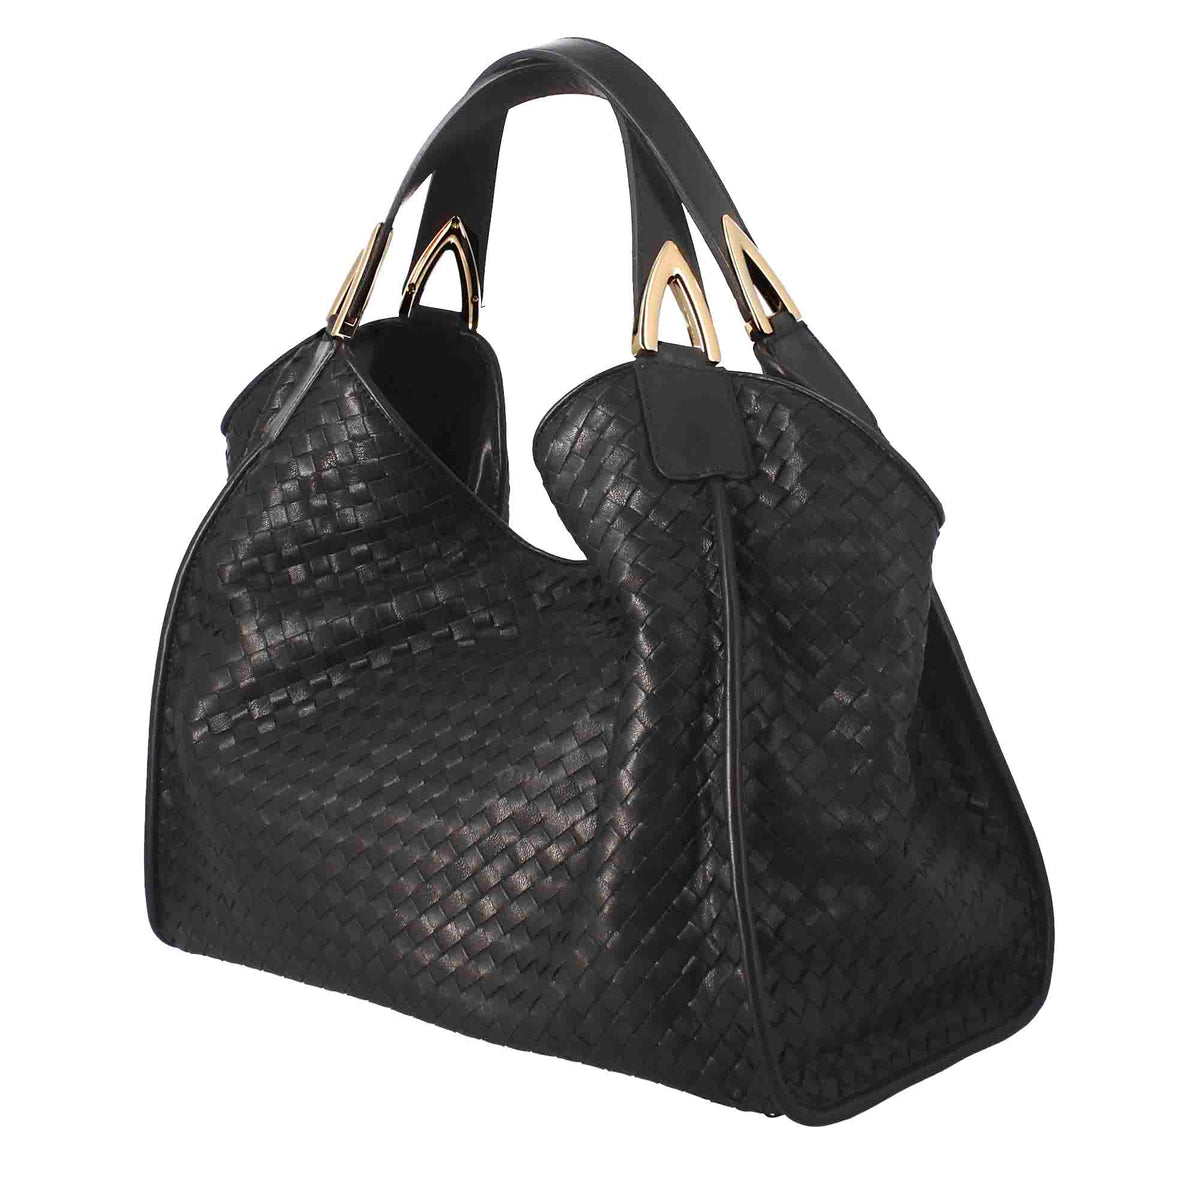 Damenhandtasche aus schwarzem gewebtem Leder, handgefertigt